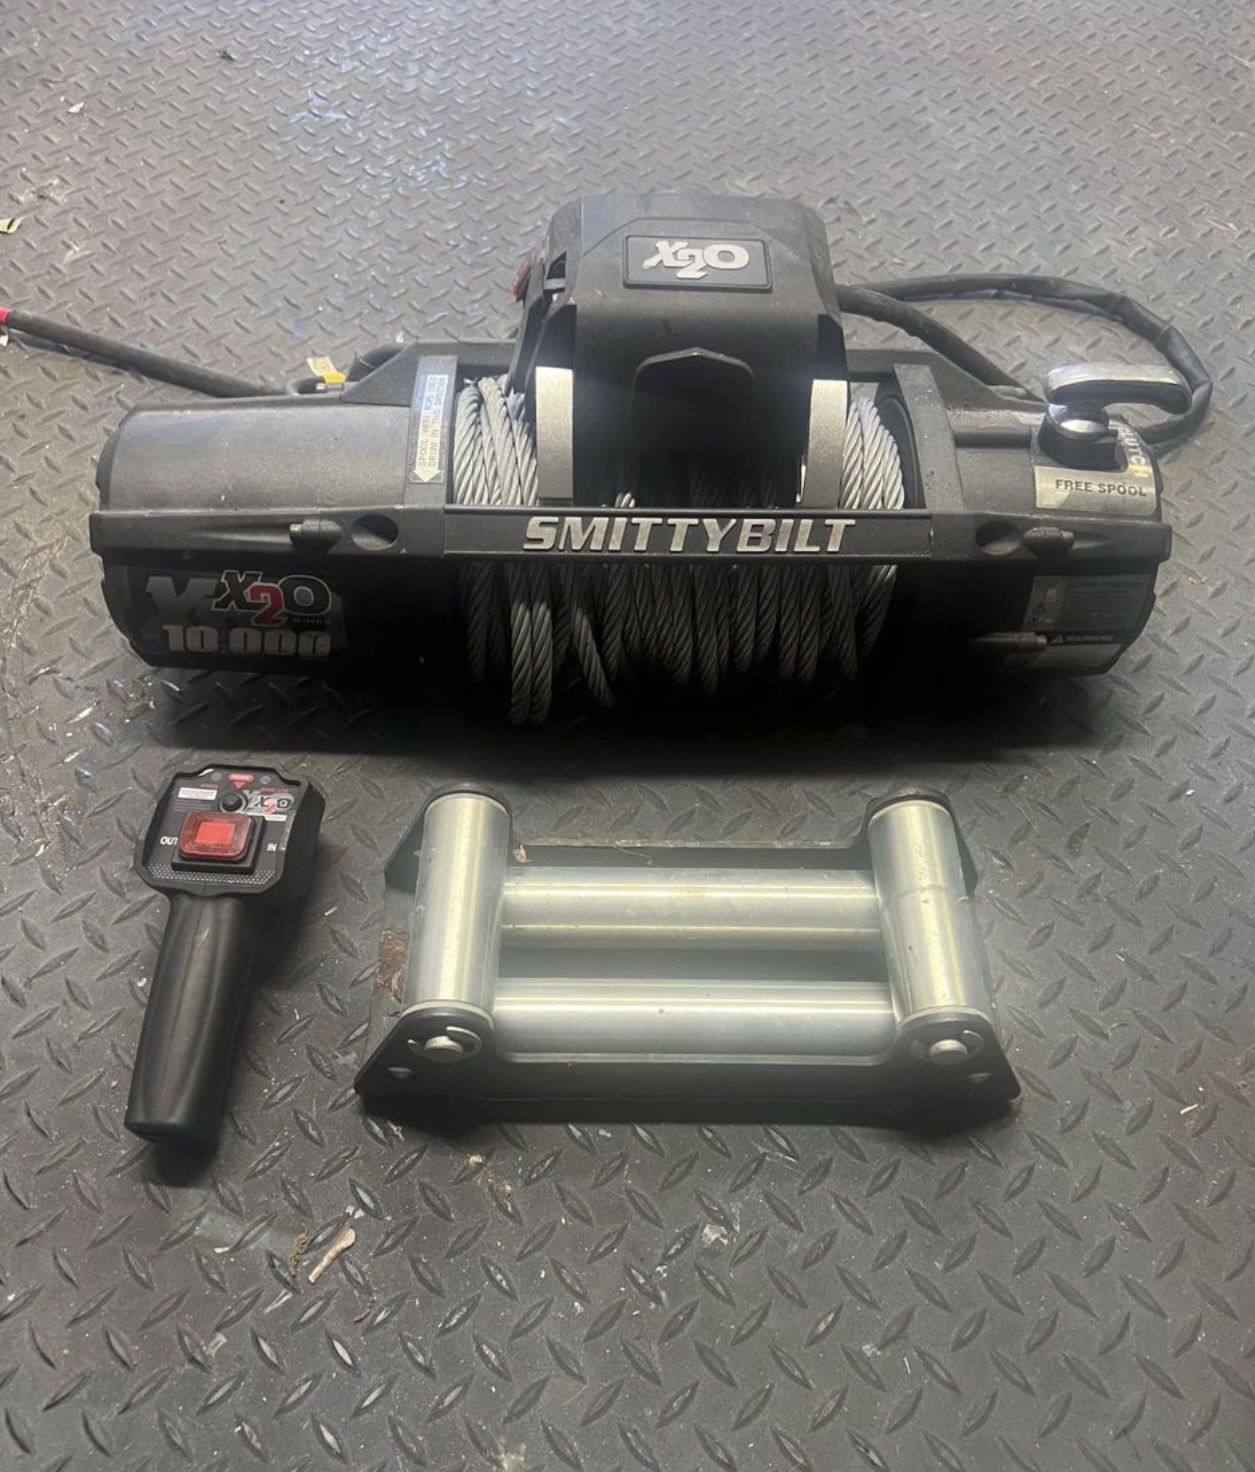 Smittybilt winch x20 10k waterproof wireless